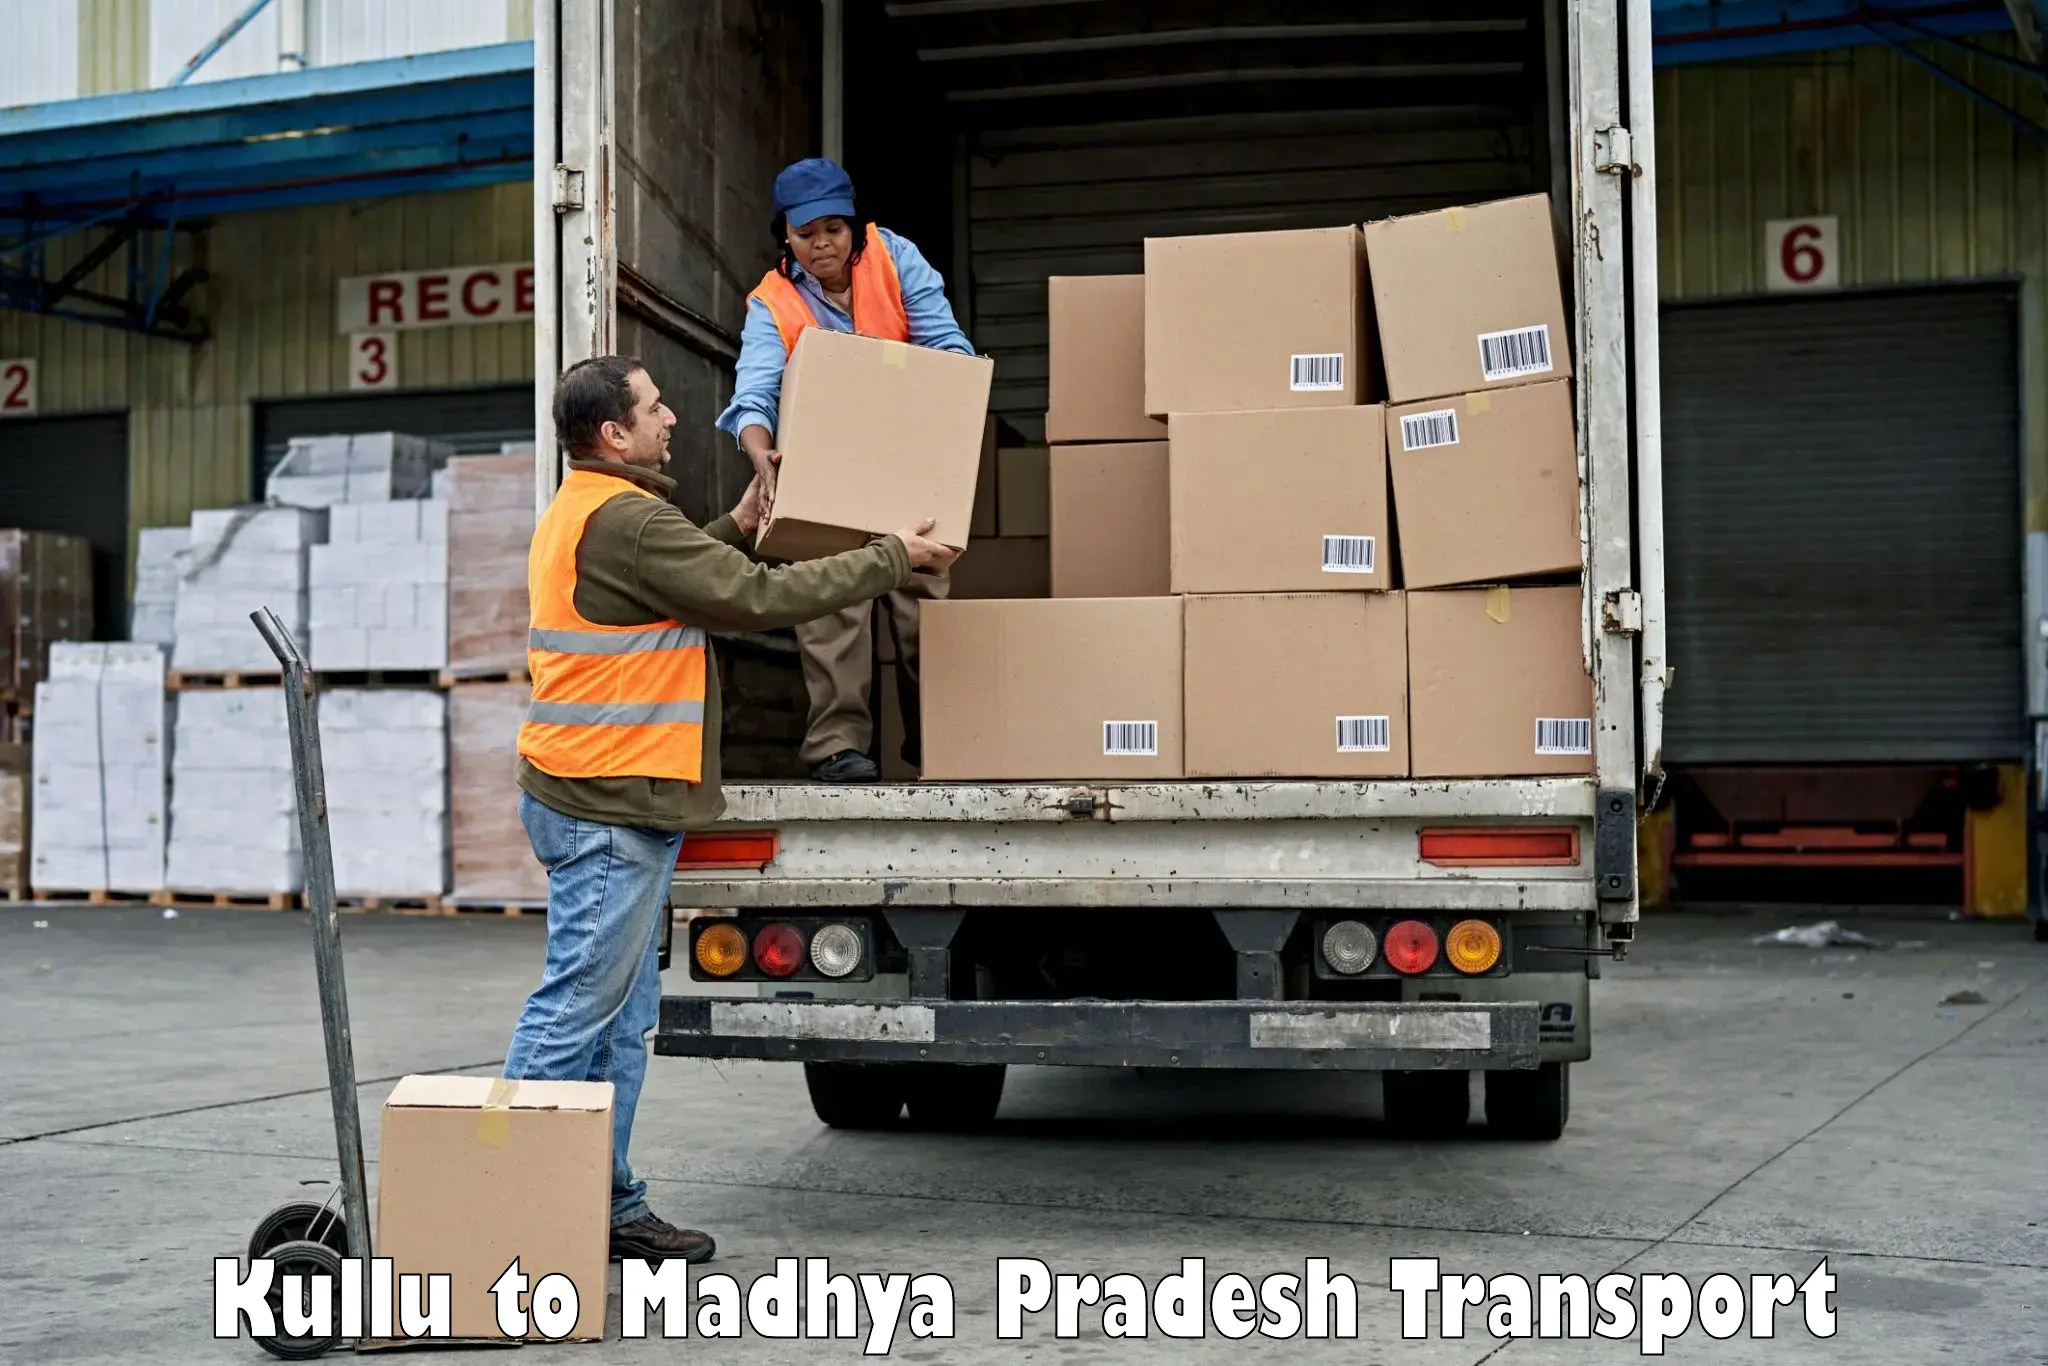 Parcel transport services Kullu to Lahar